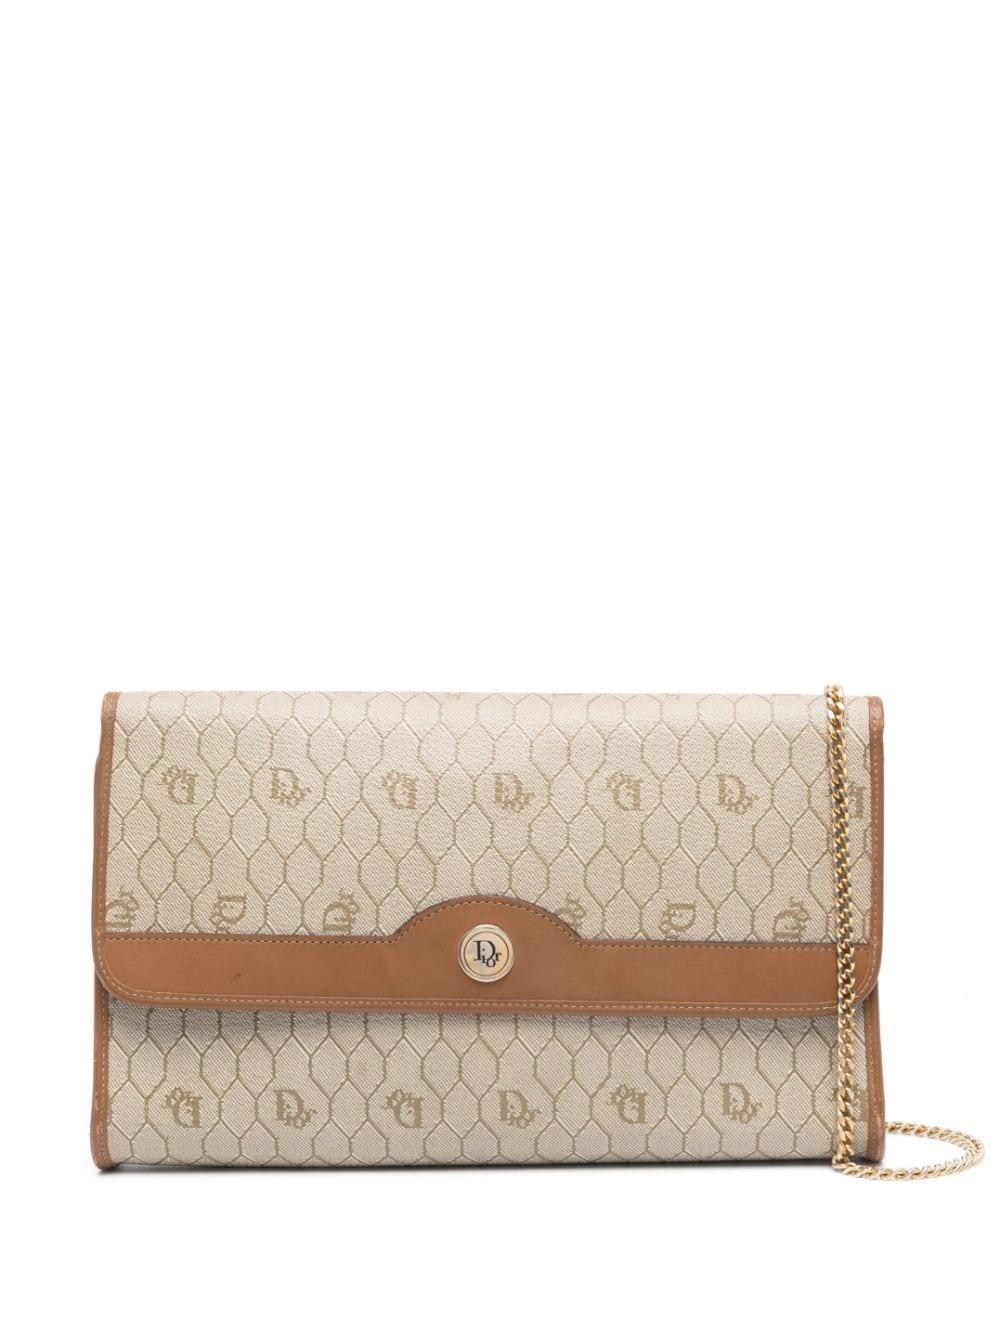 Christian Dior Camel Honeycomb Shoulder Bag For Sale 2